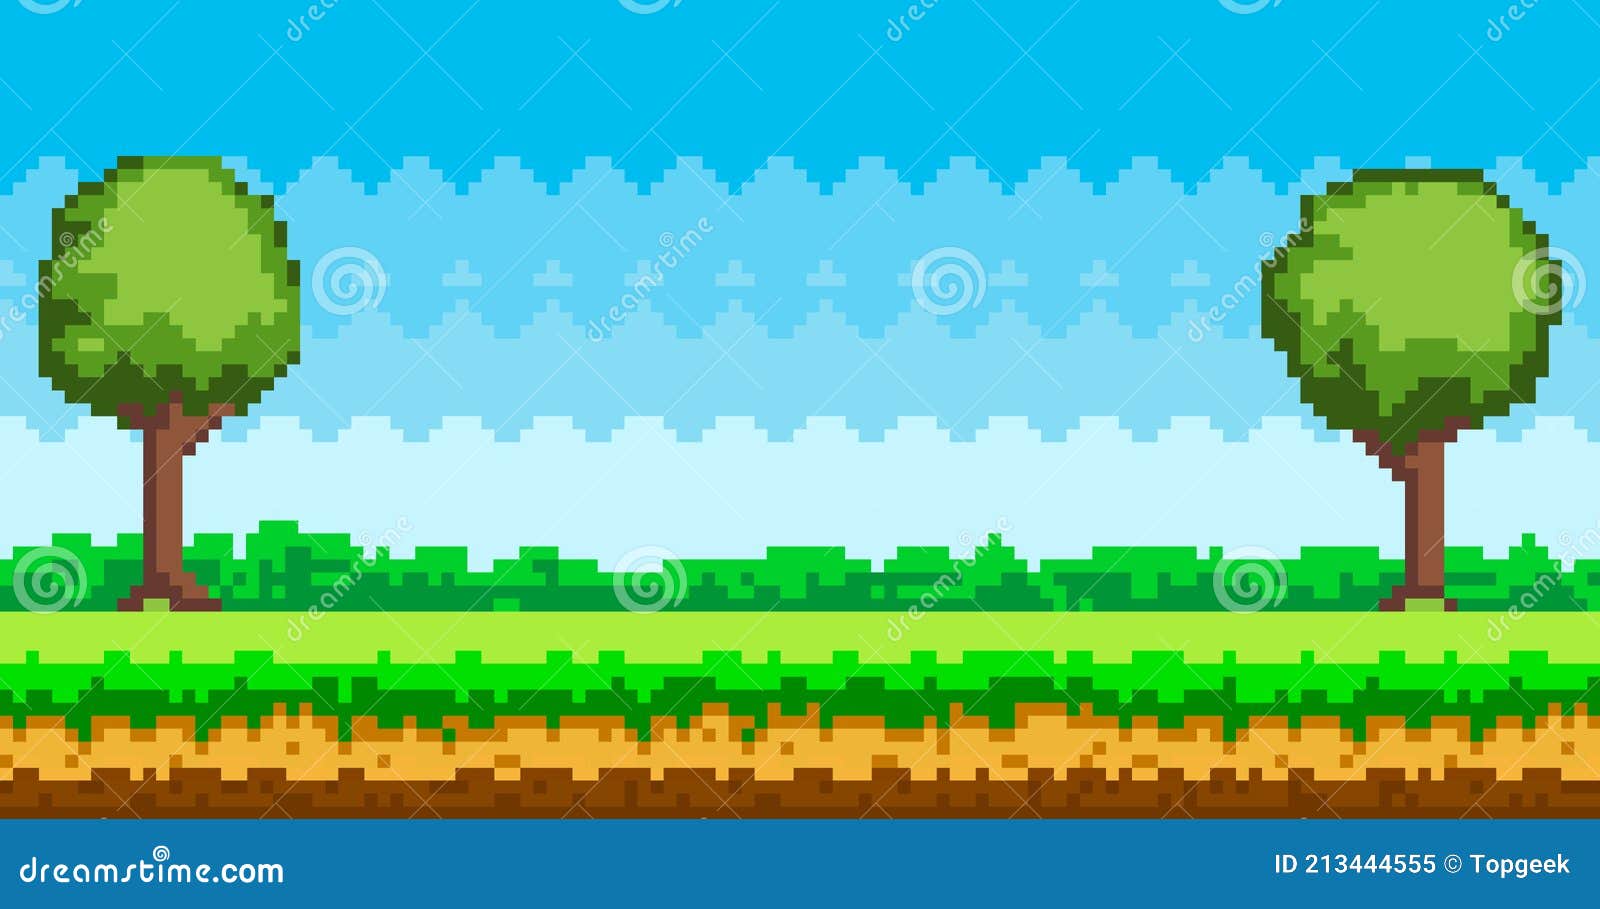 Hình nền trò chơi Pixel - Cảnh game Pixel Art với cỏ xanh và ... - Bạn là fan của game Pixel Art, thích trải nghiệm những cảnh đẹp lung linh và đầy màu sắc? Hãy ngắm nhìn hình nền trò chơi Pixel, thưởng thức một thế giới ảo đầy sôi động và bất ngờ!